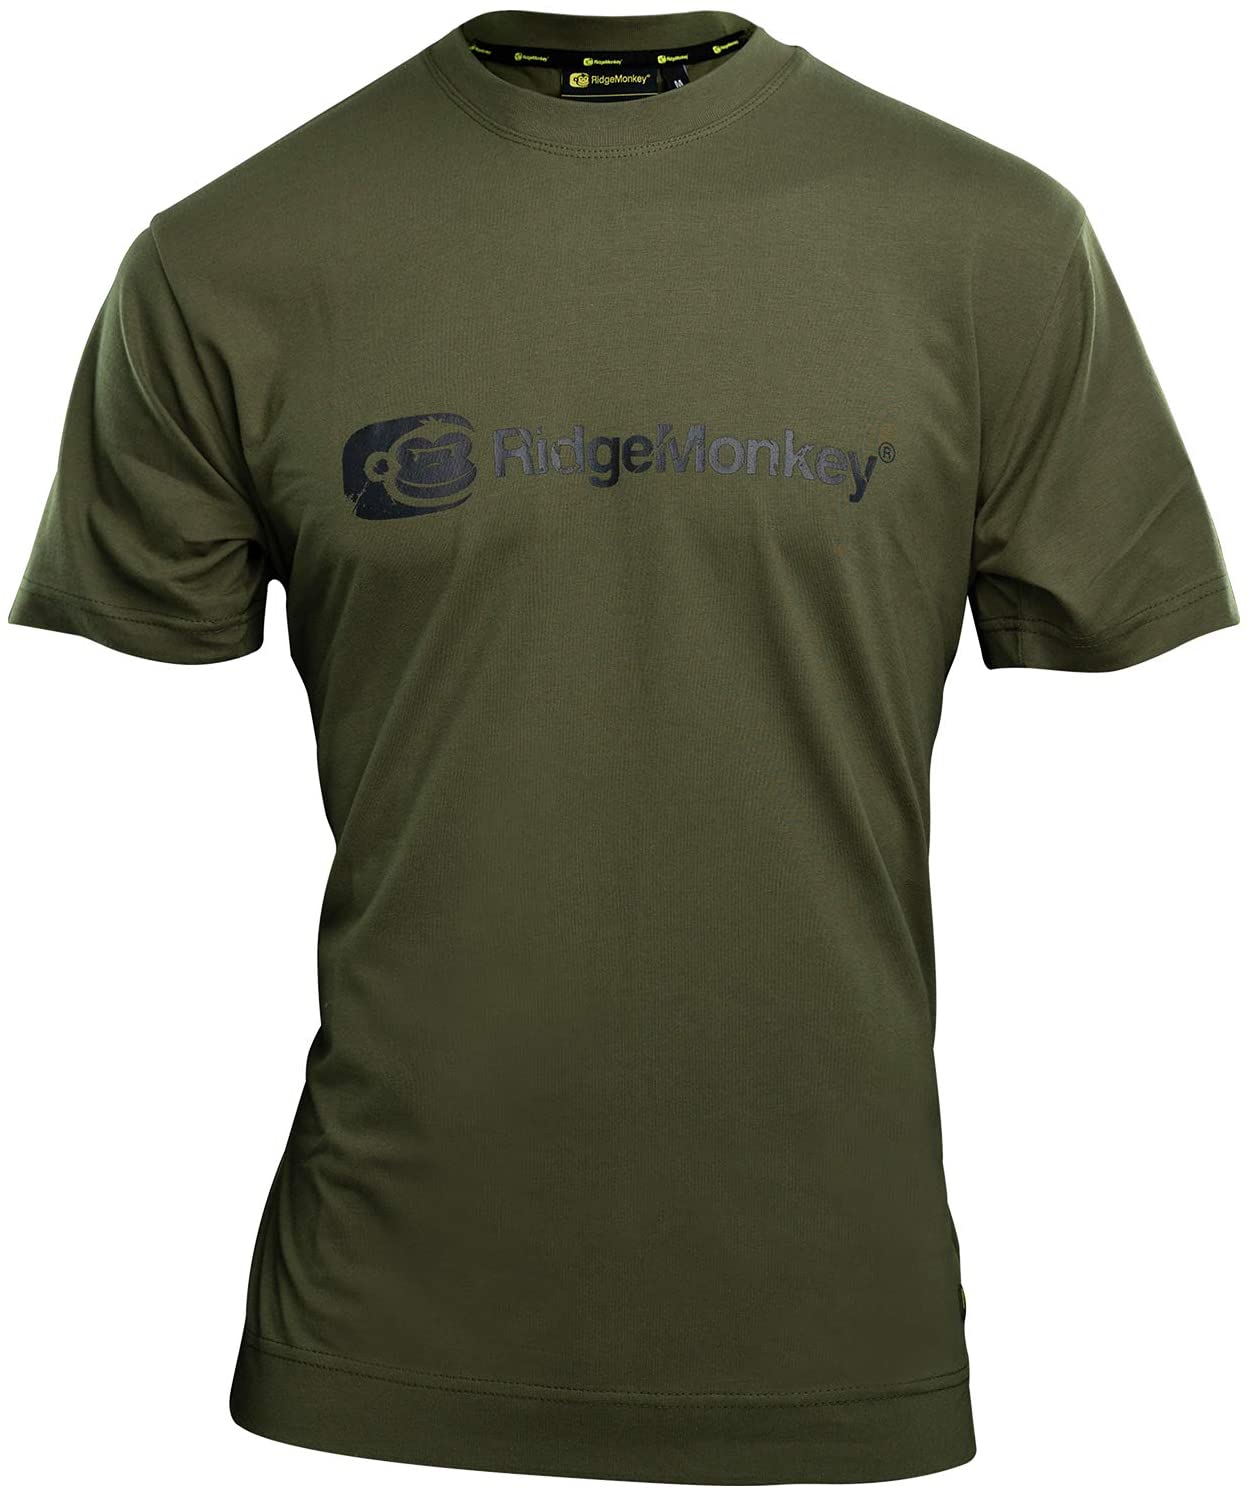 RidgeMonkey APEarel Dropback T Shirt Green • Homeleigh Garden Centres